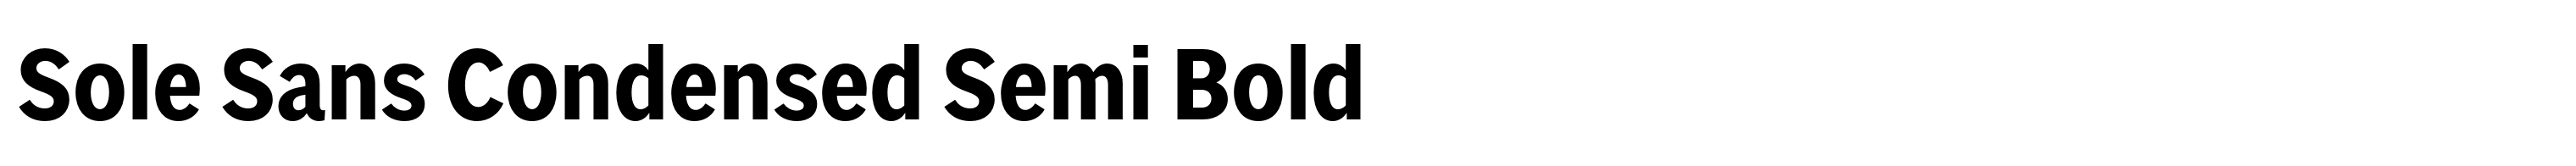 Sole Sans Condensed Semi Bold